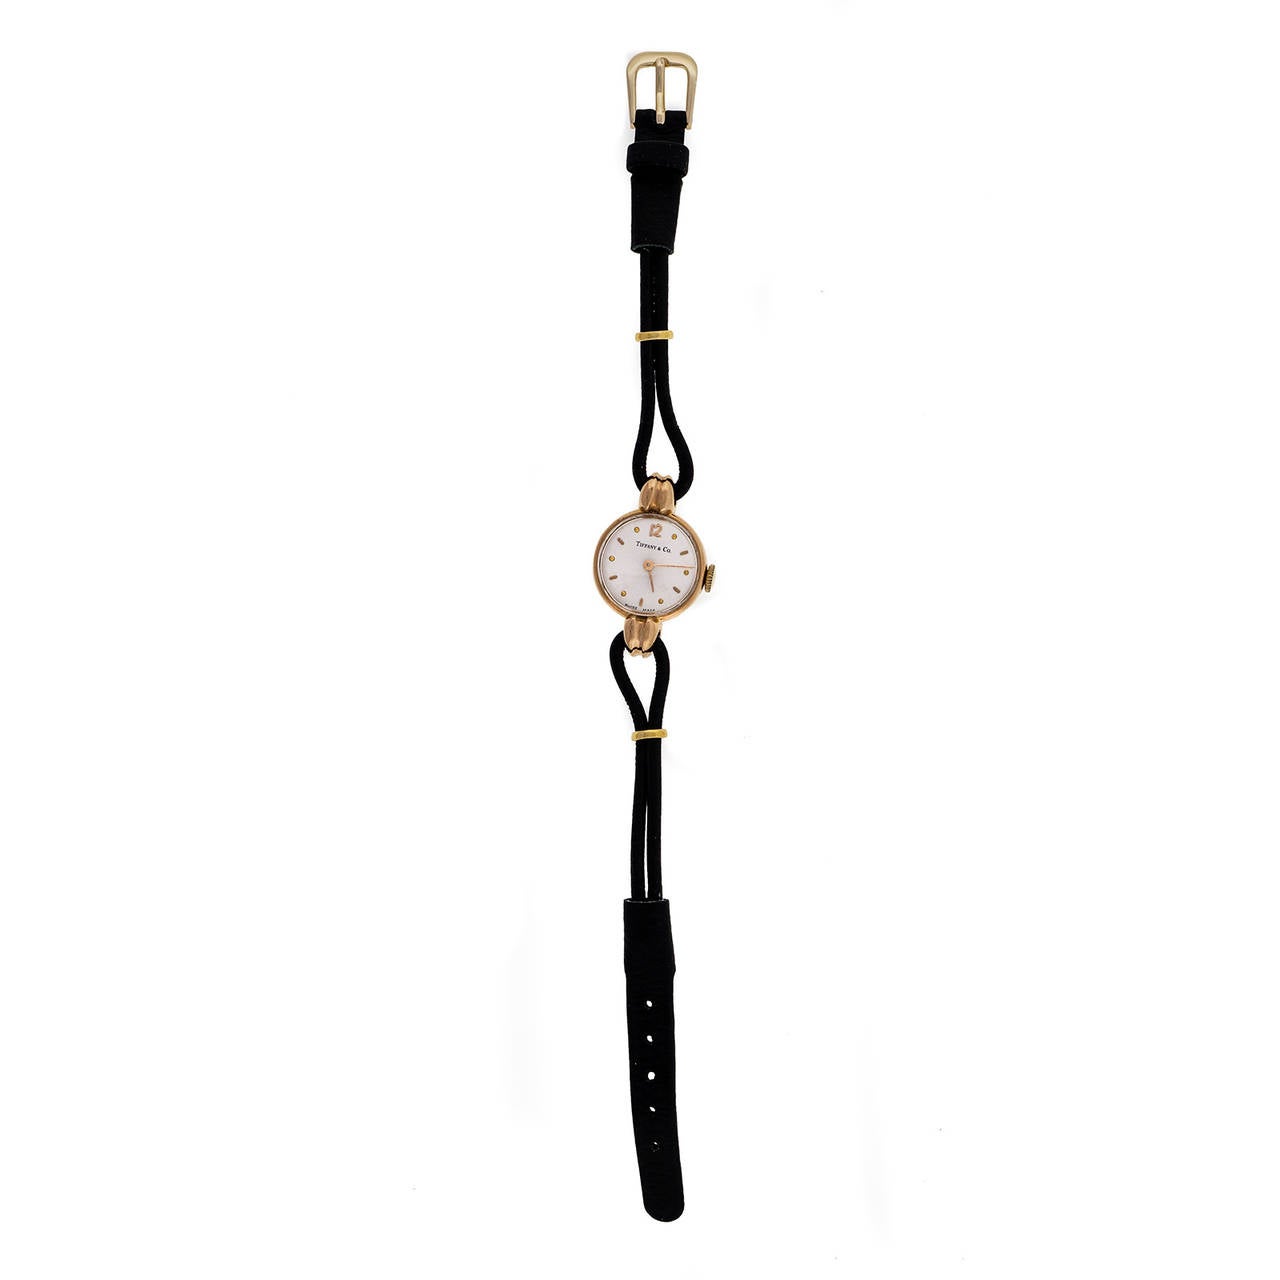 Montre-bracelet universelle pour dame en or rose, repiquée par Tiffany & Co, vers les années 1940

or rose 18k
Longueur : 31,4 mm
Largeur : 19,4 mm
Épaisseur du boîtier : 8 mm
Cadran : Argenté avec index en or
Boîtier intérieur : Universel